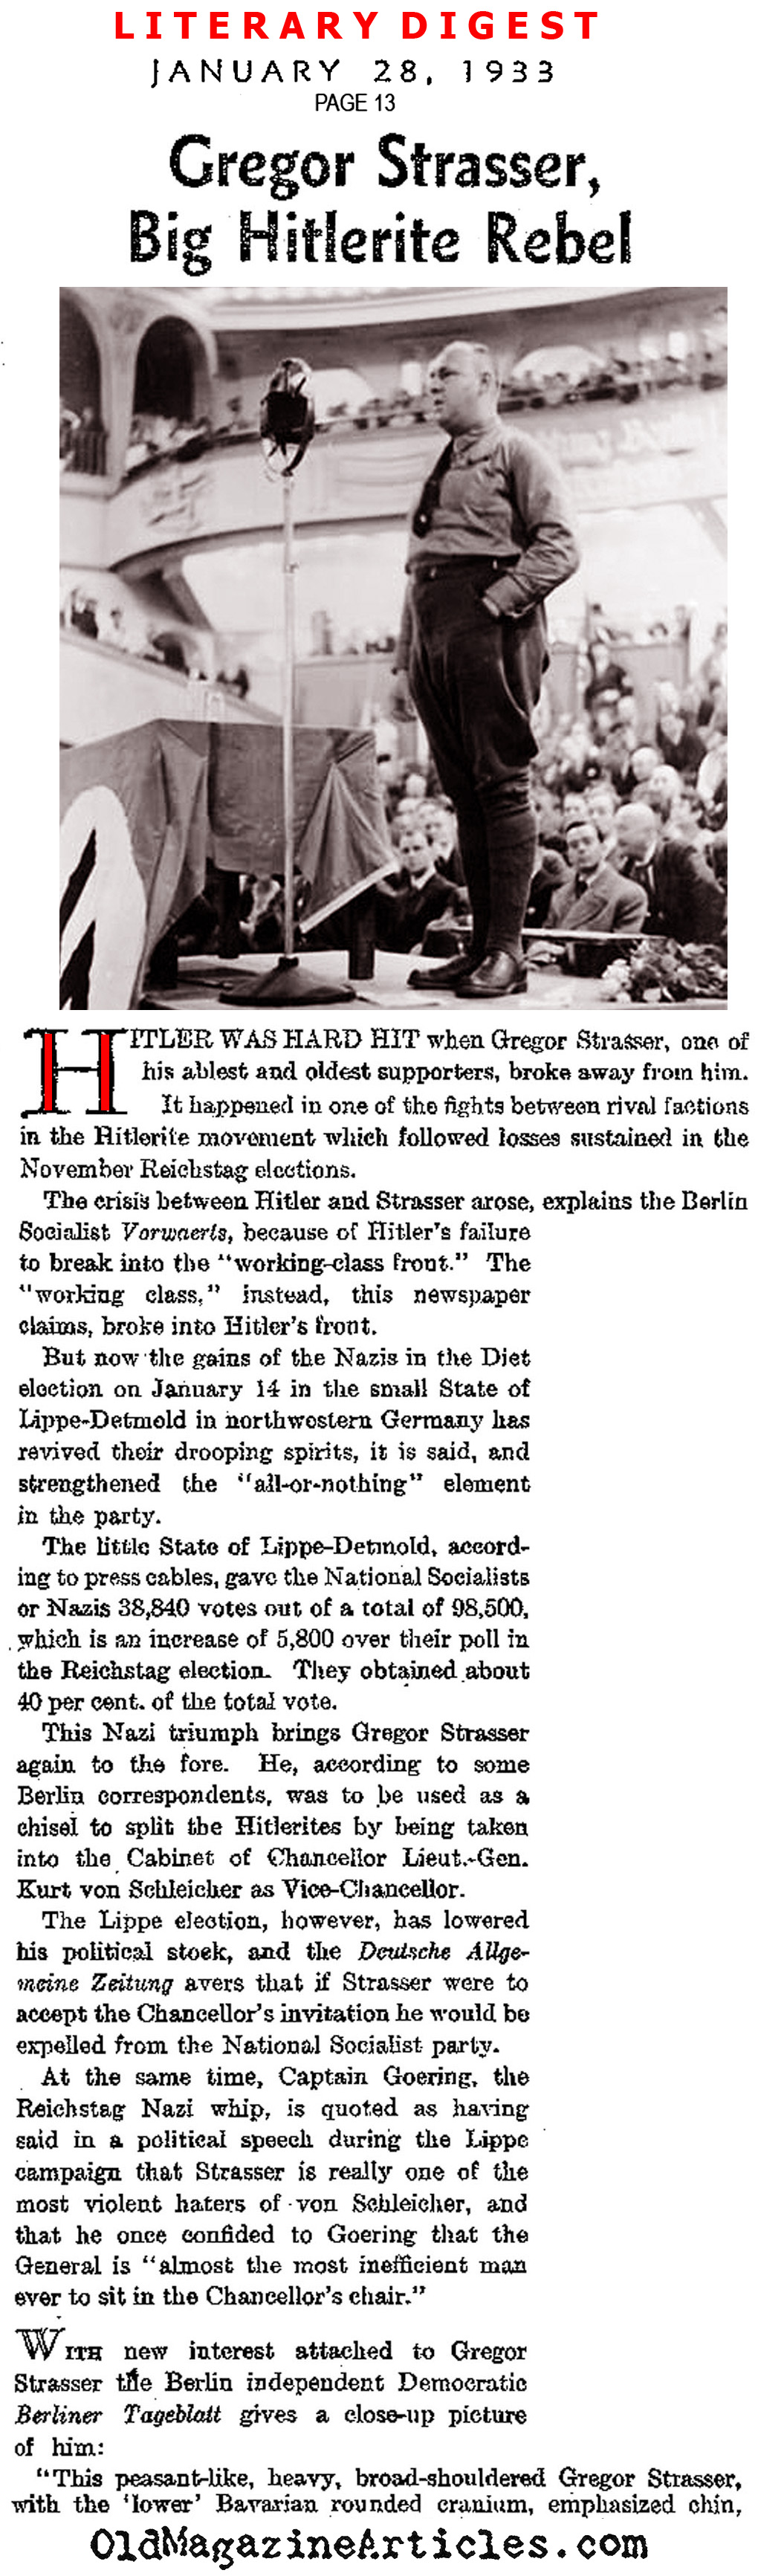 Gregor Strasser: the Nazi Rebel (Literary Digest, 1933)